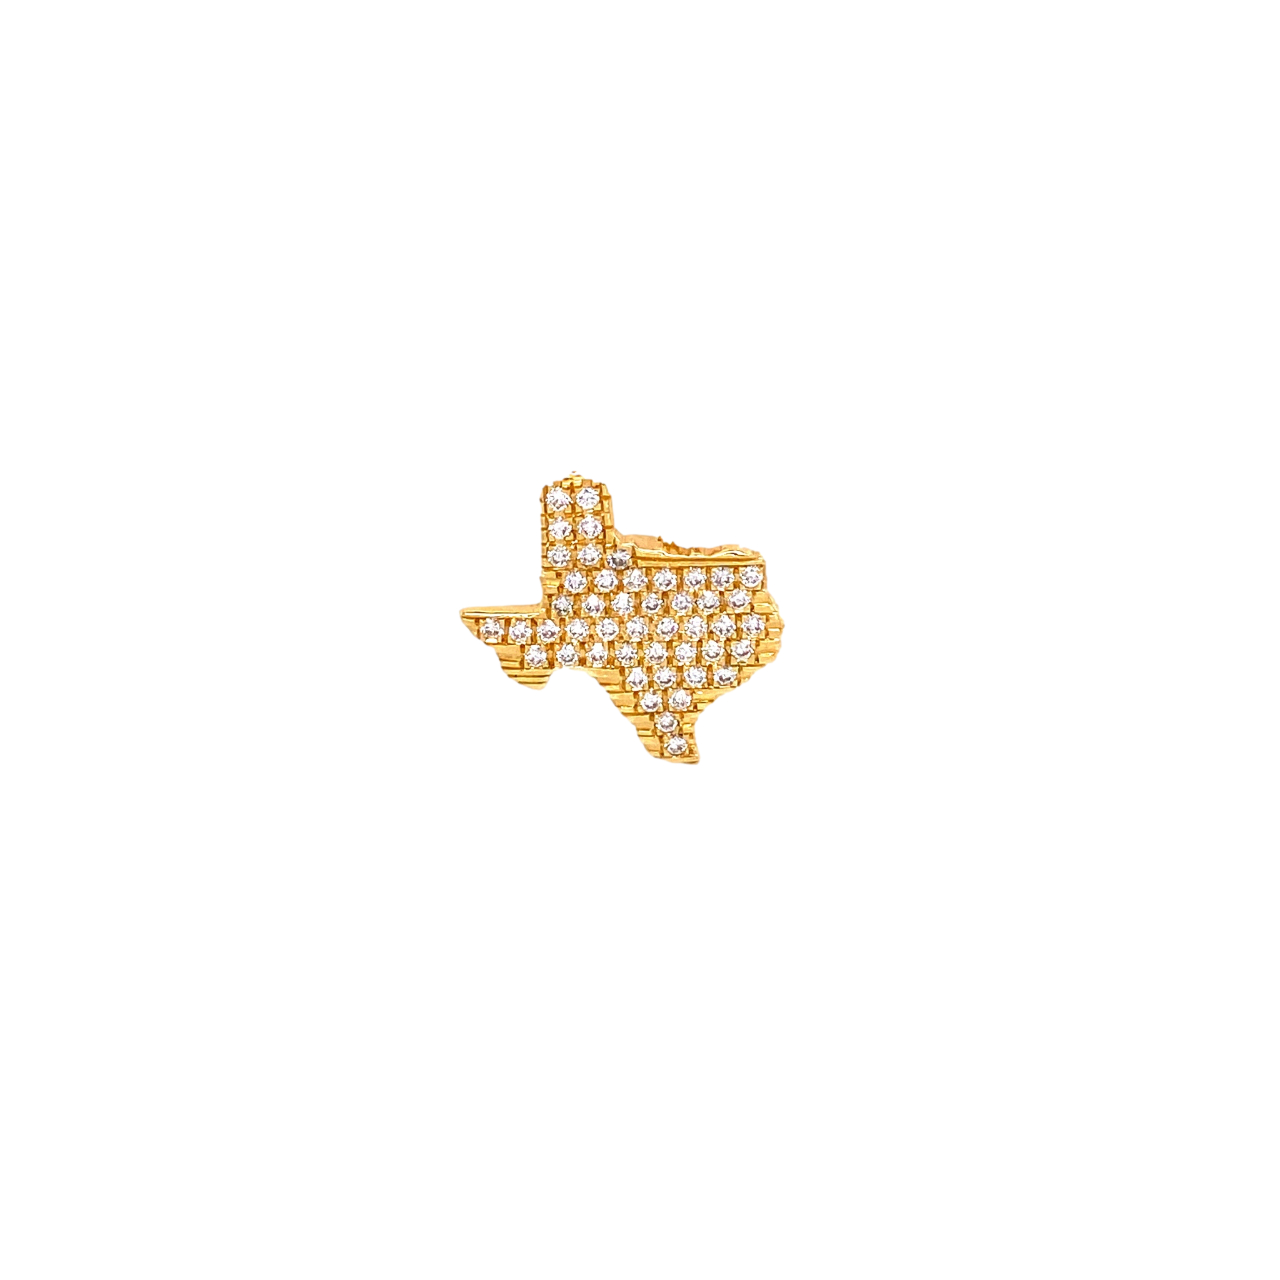 Korman Signature 18kt Diamond Texas Lapel Pin Yellow Gold